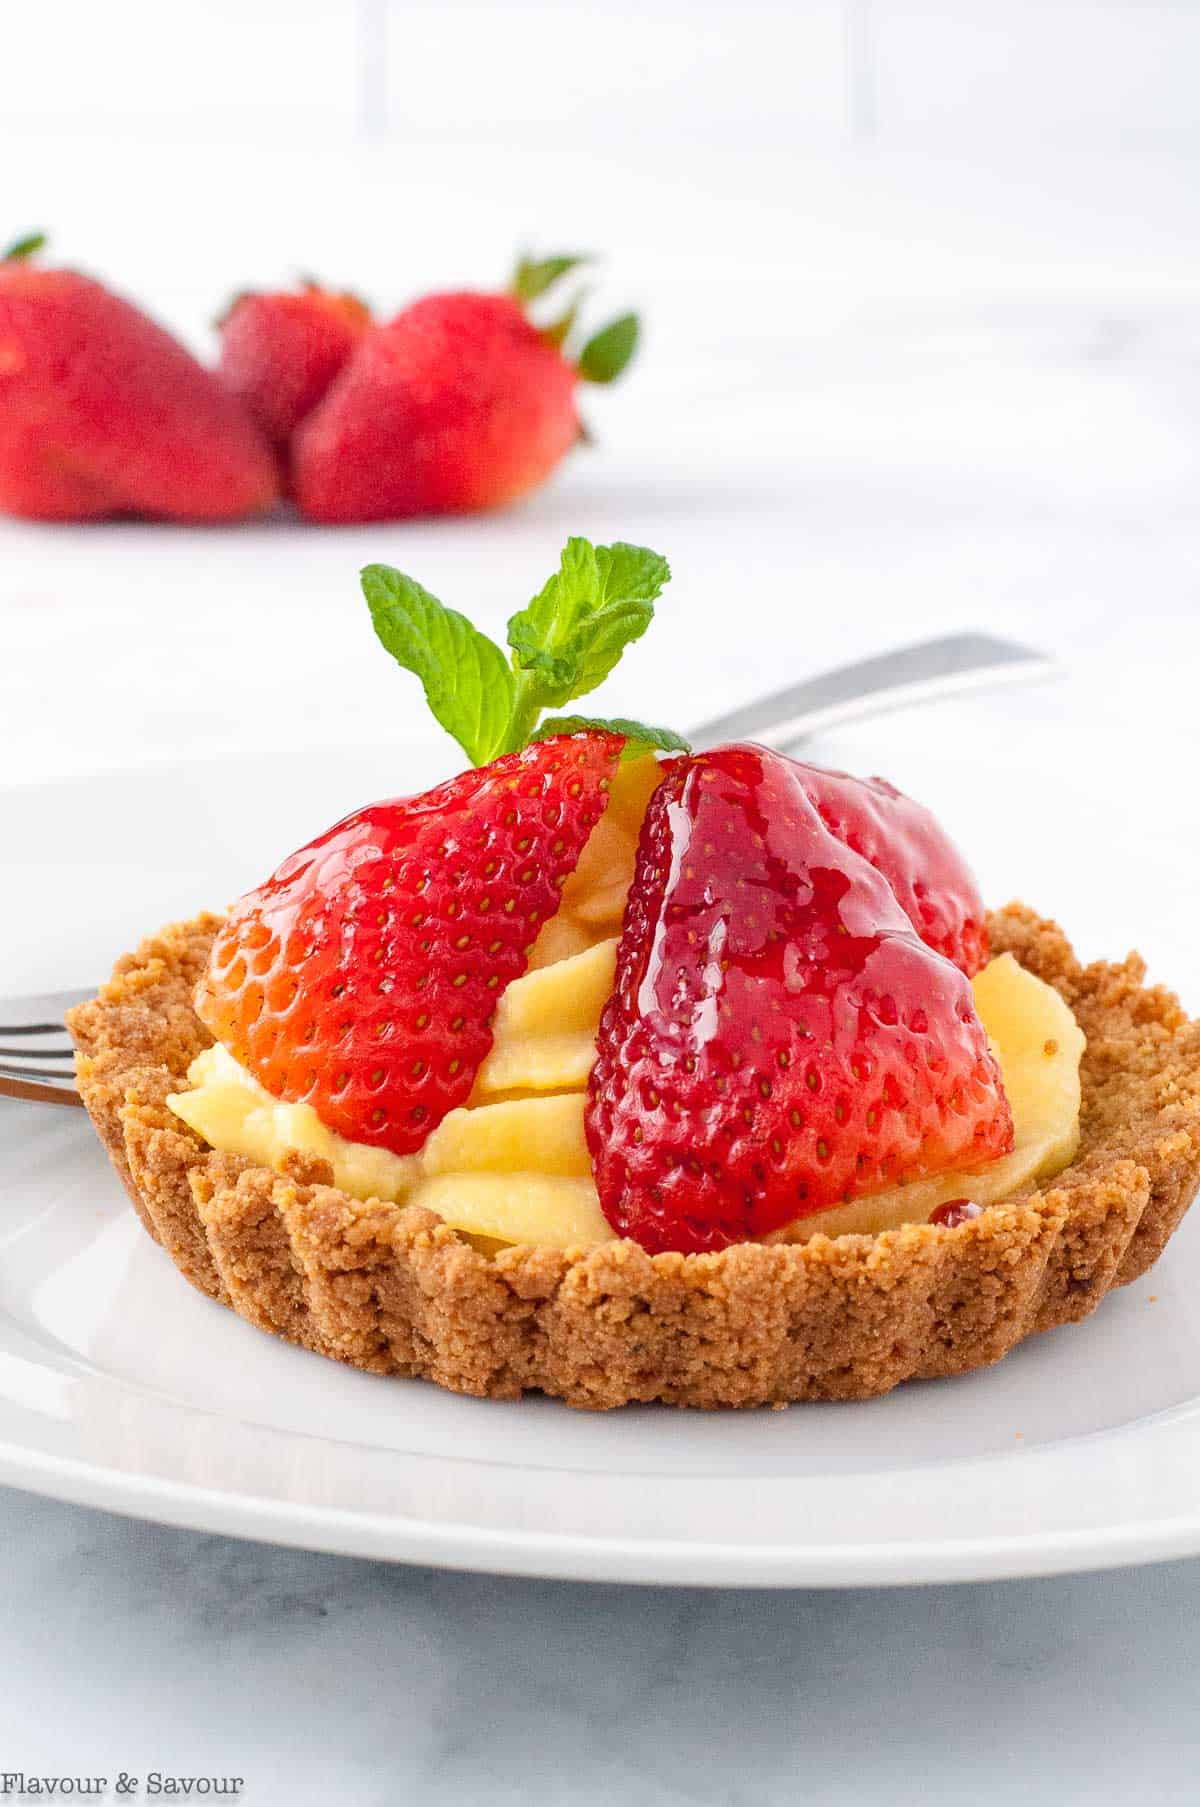 Strawberry tarts with vanilla pastry cream and graham cracker crust.